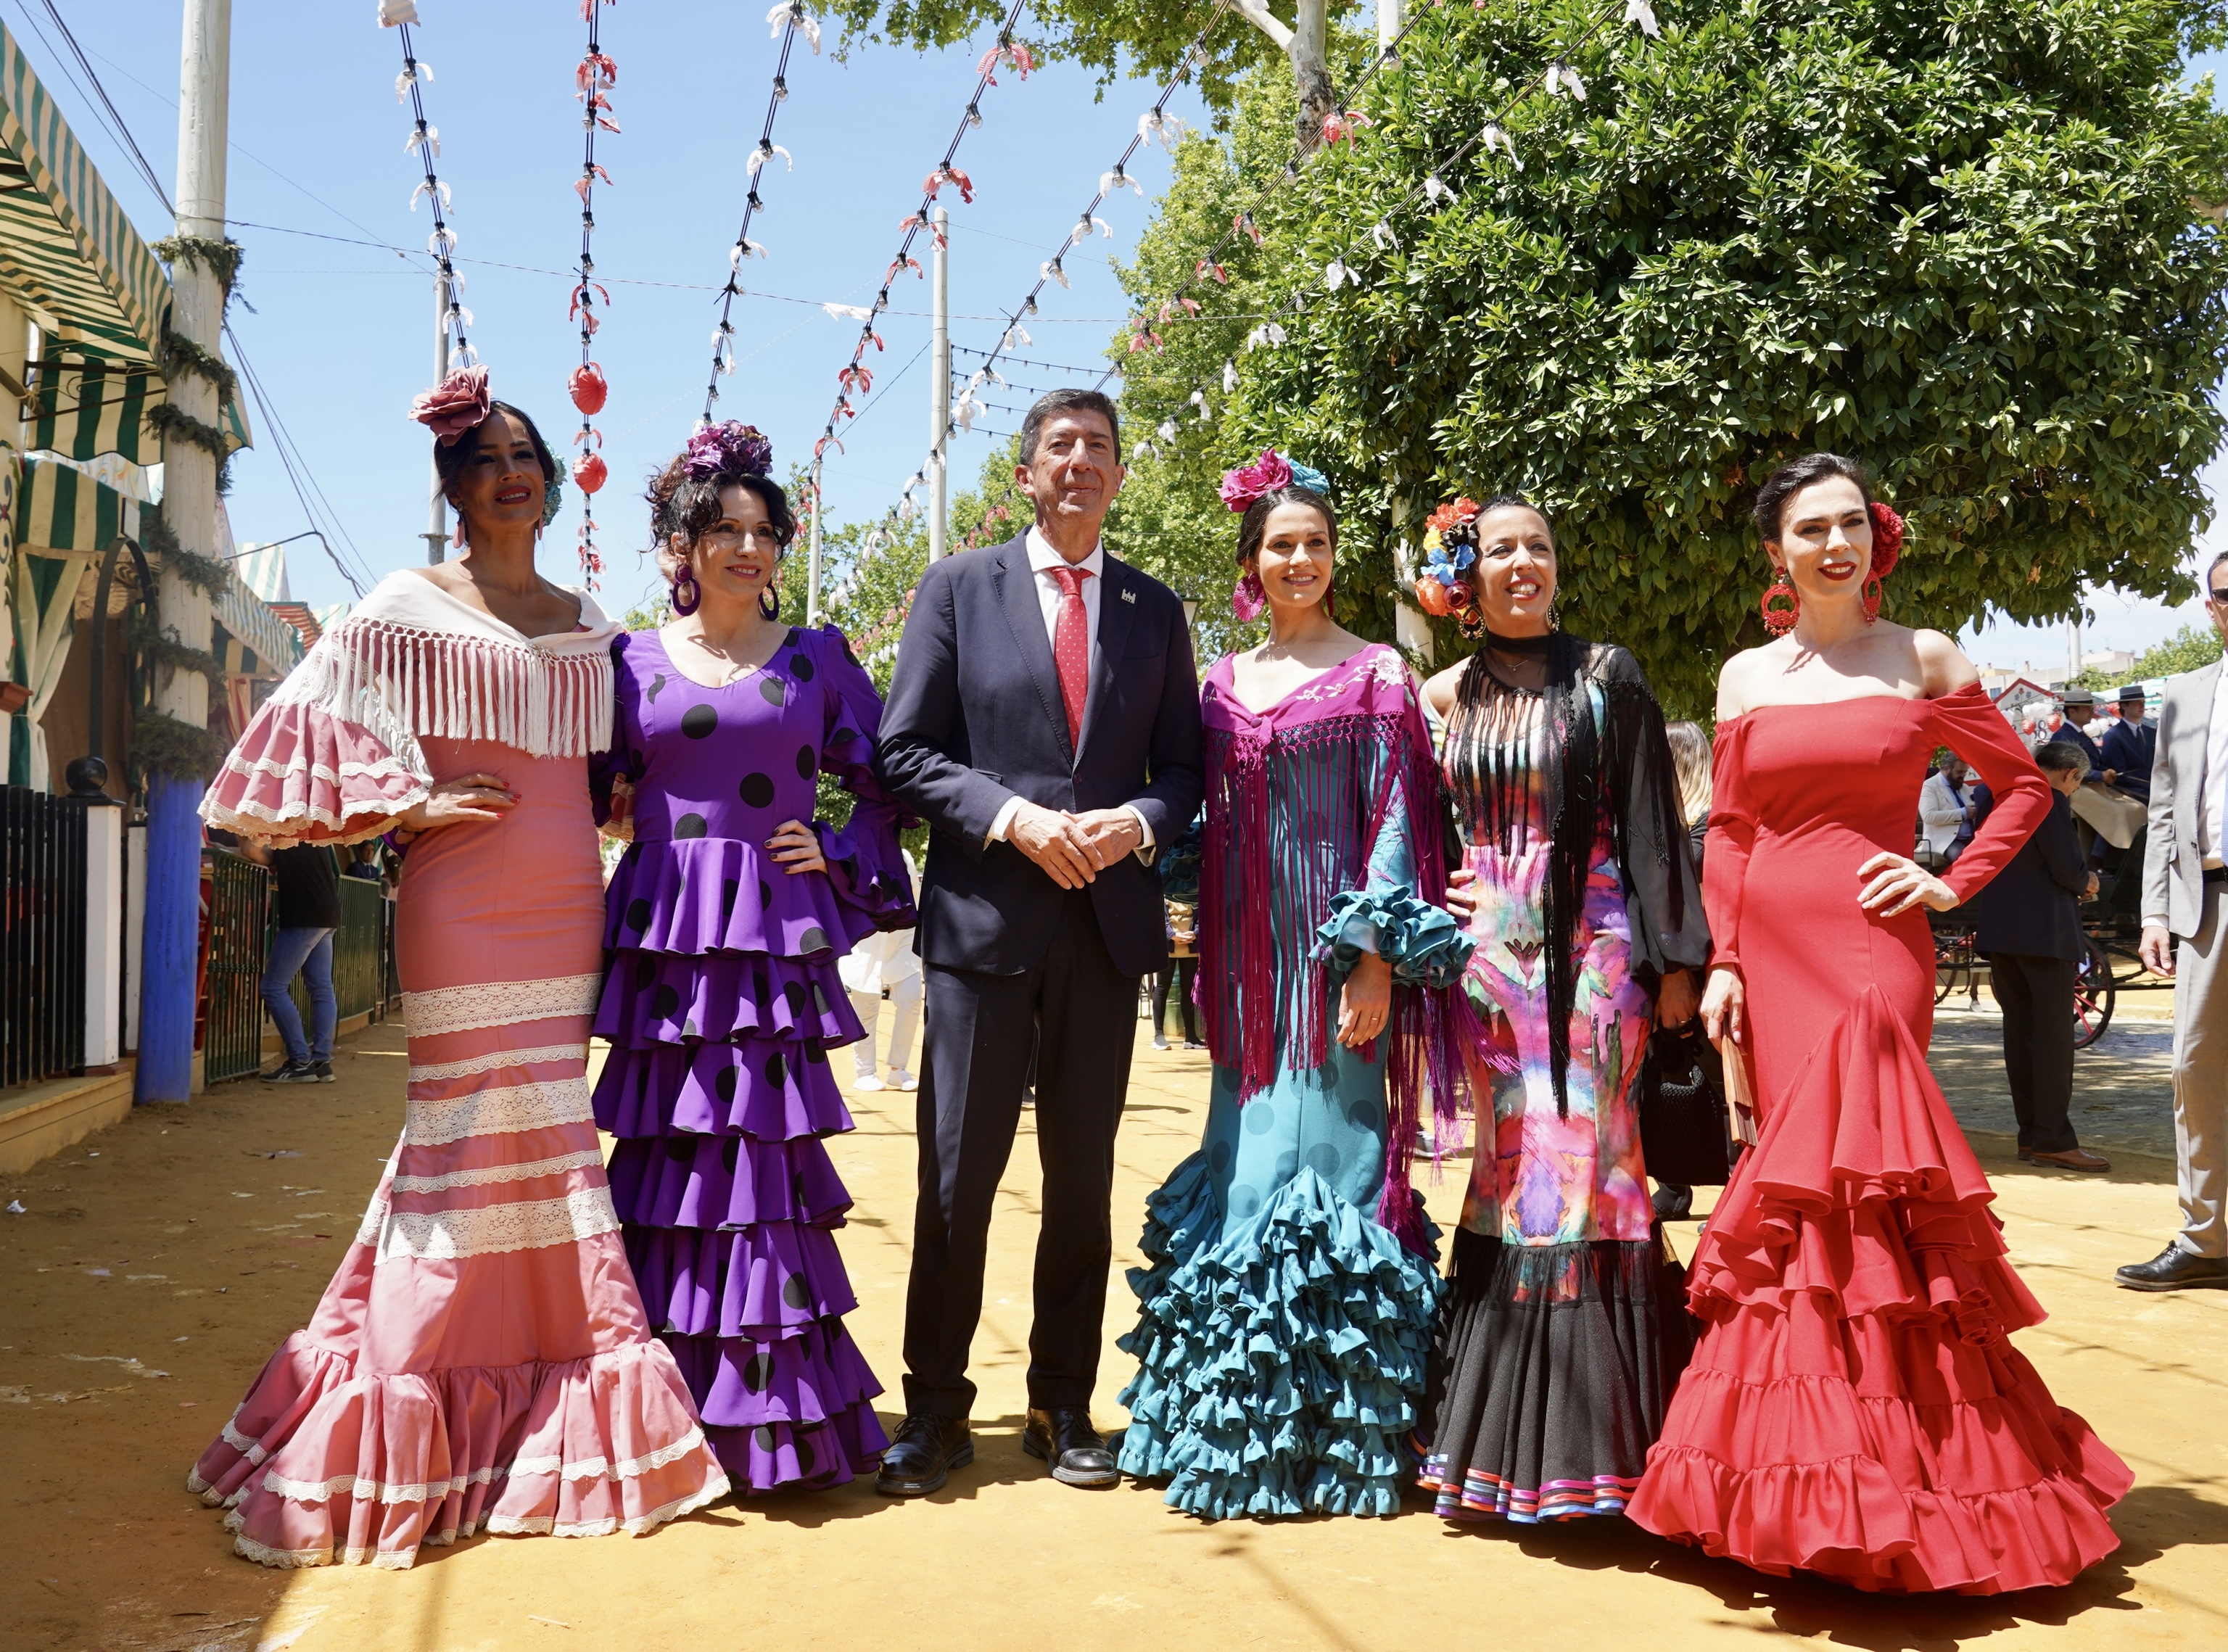 Begoa Villacs, Roco Ruiz, Juan Marn, Ins Arrimadas, Marta Bosquet y Teresa Pardo, ayer en la Feria de Sevilla.